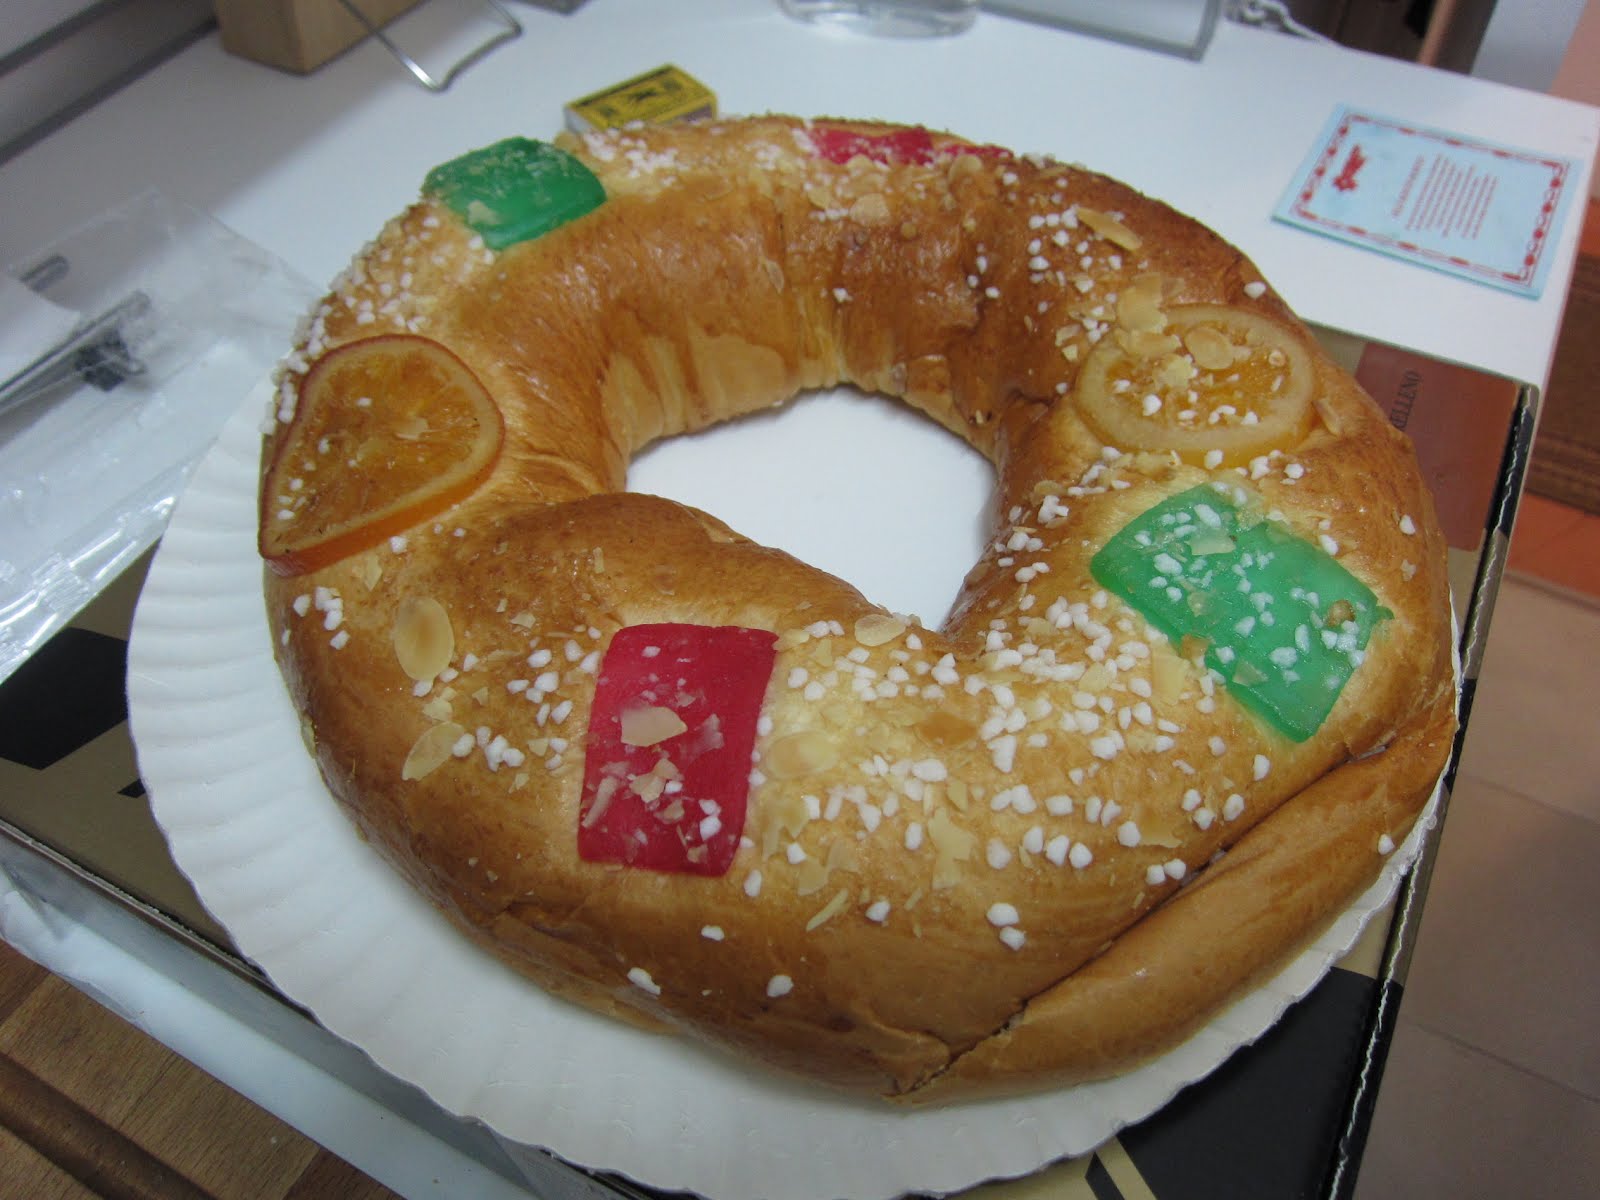 Where Is Darren Now?: Rosca De Reyes